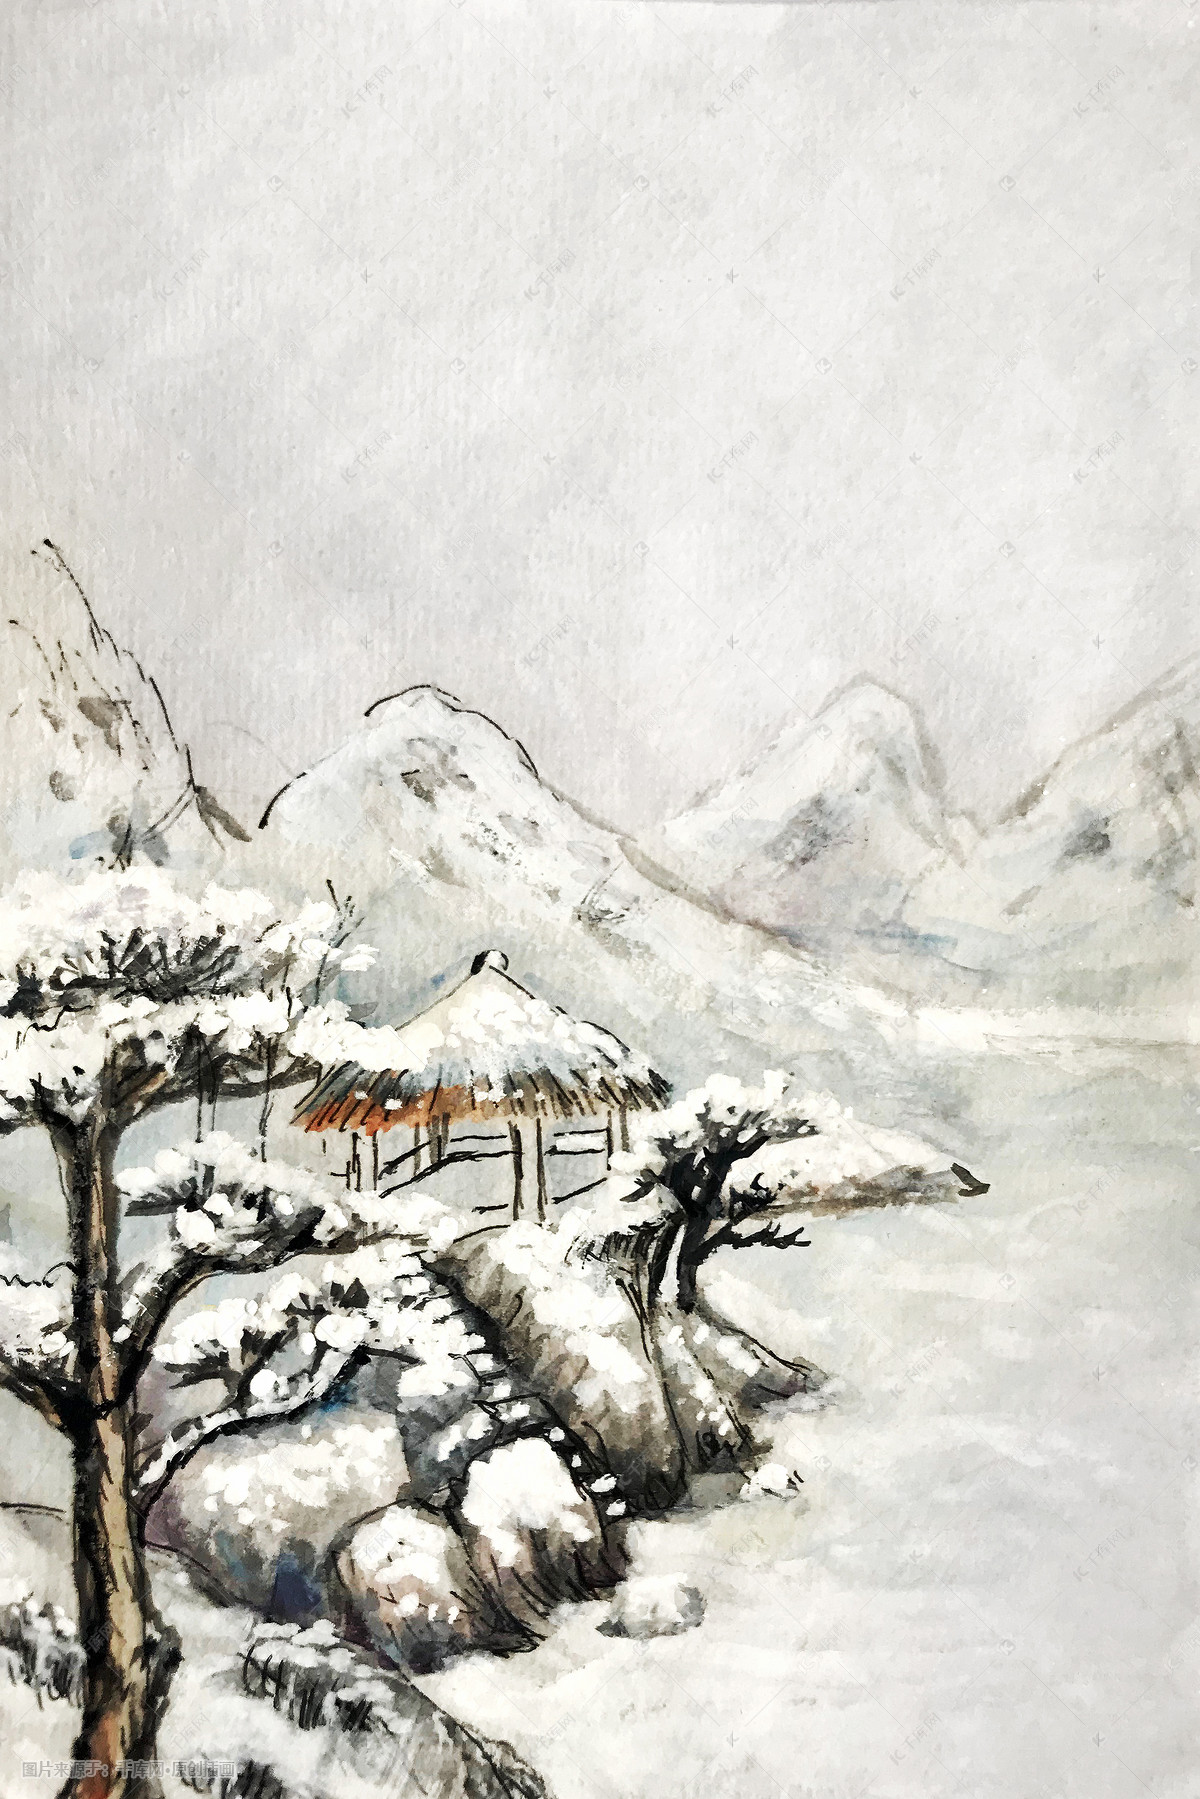 以冬季为主题的儿童画,冬天少儿绘画作品 - 毛毛简笔画